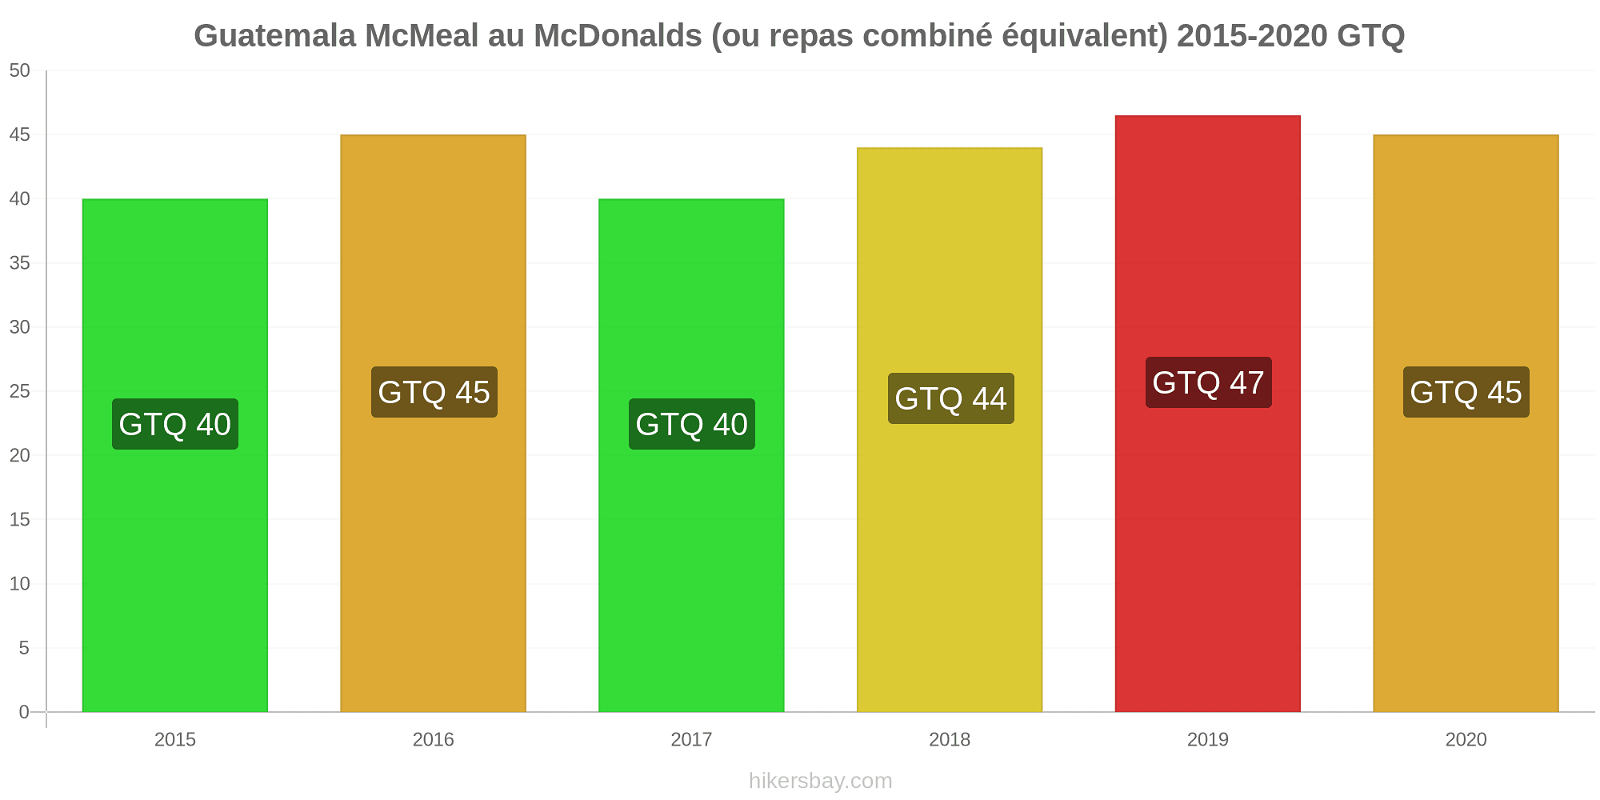 Guatemala changements de prix McMeal à McDonald ' s (ou Combo équivalent tourteau) hikersbay.com